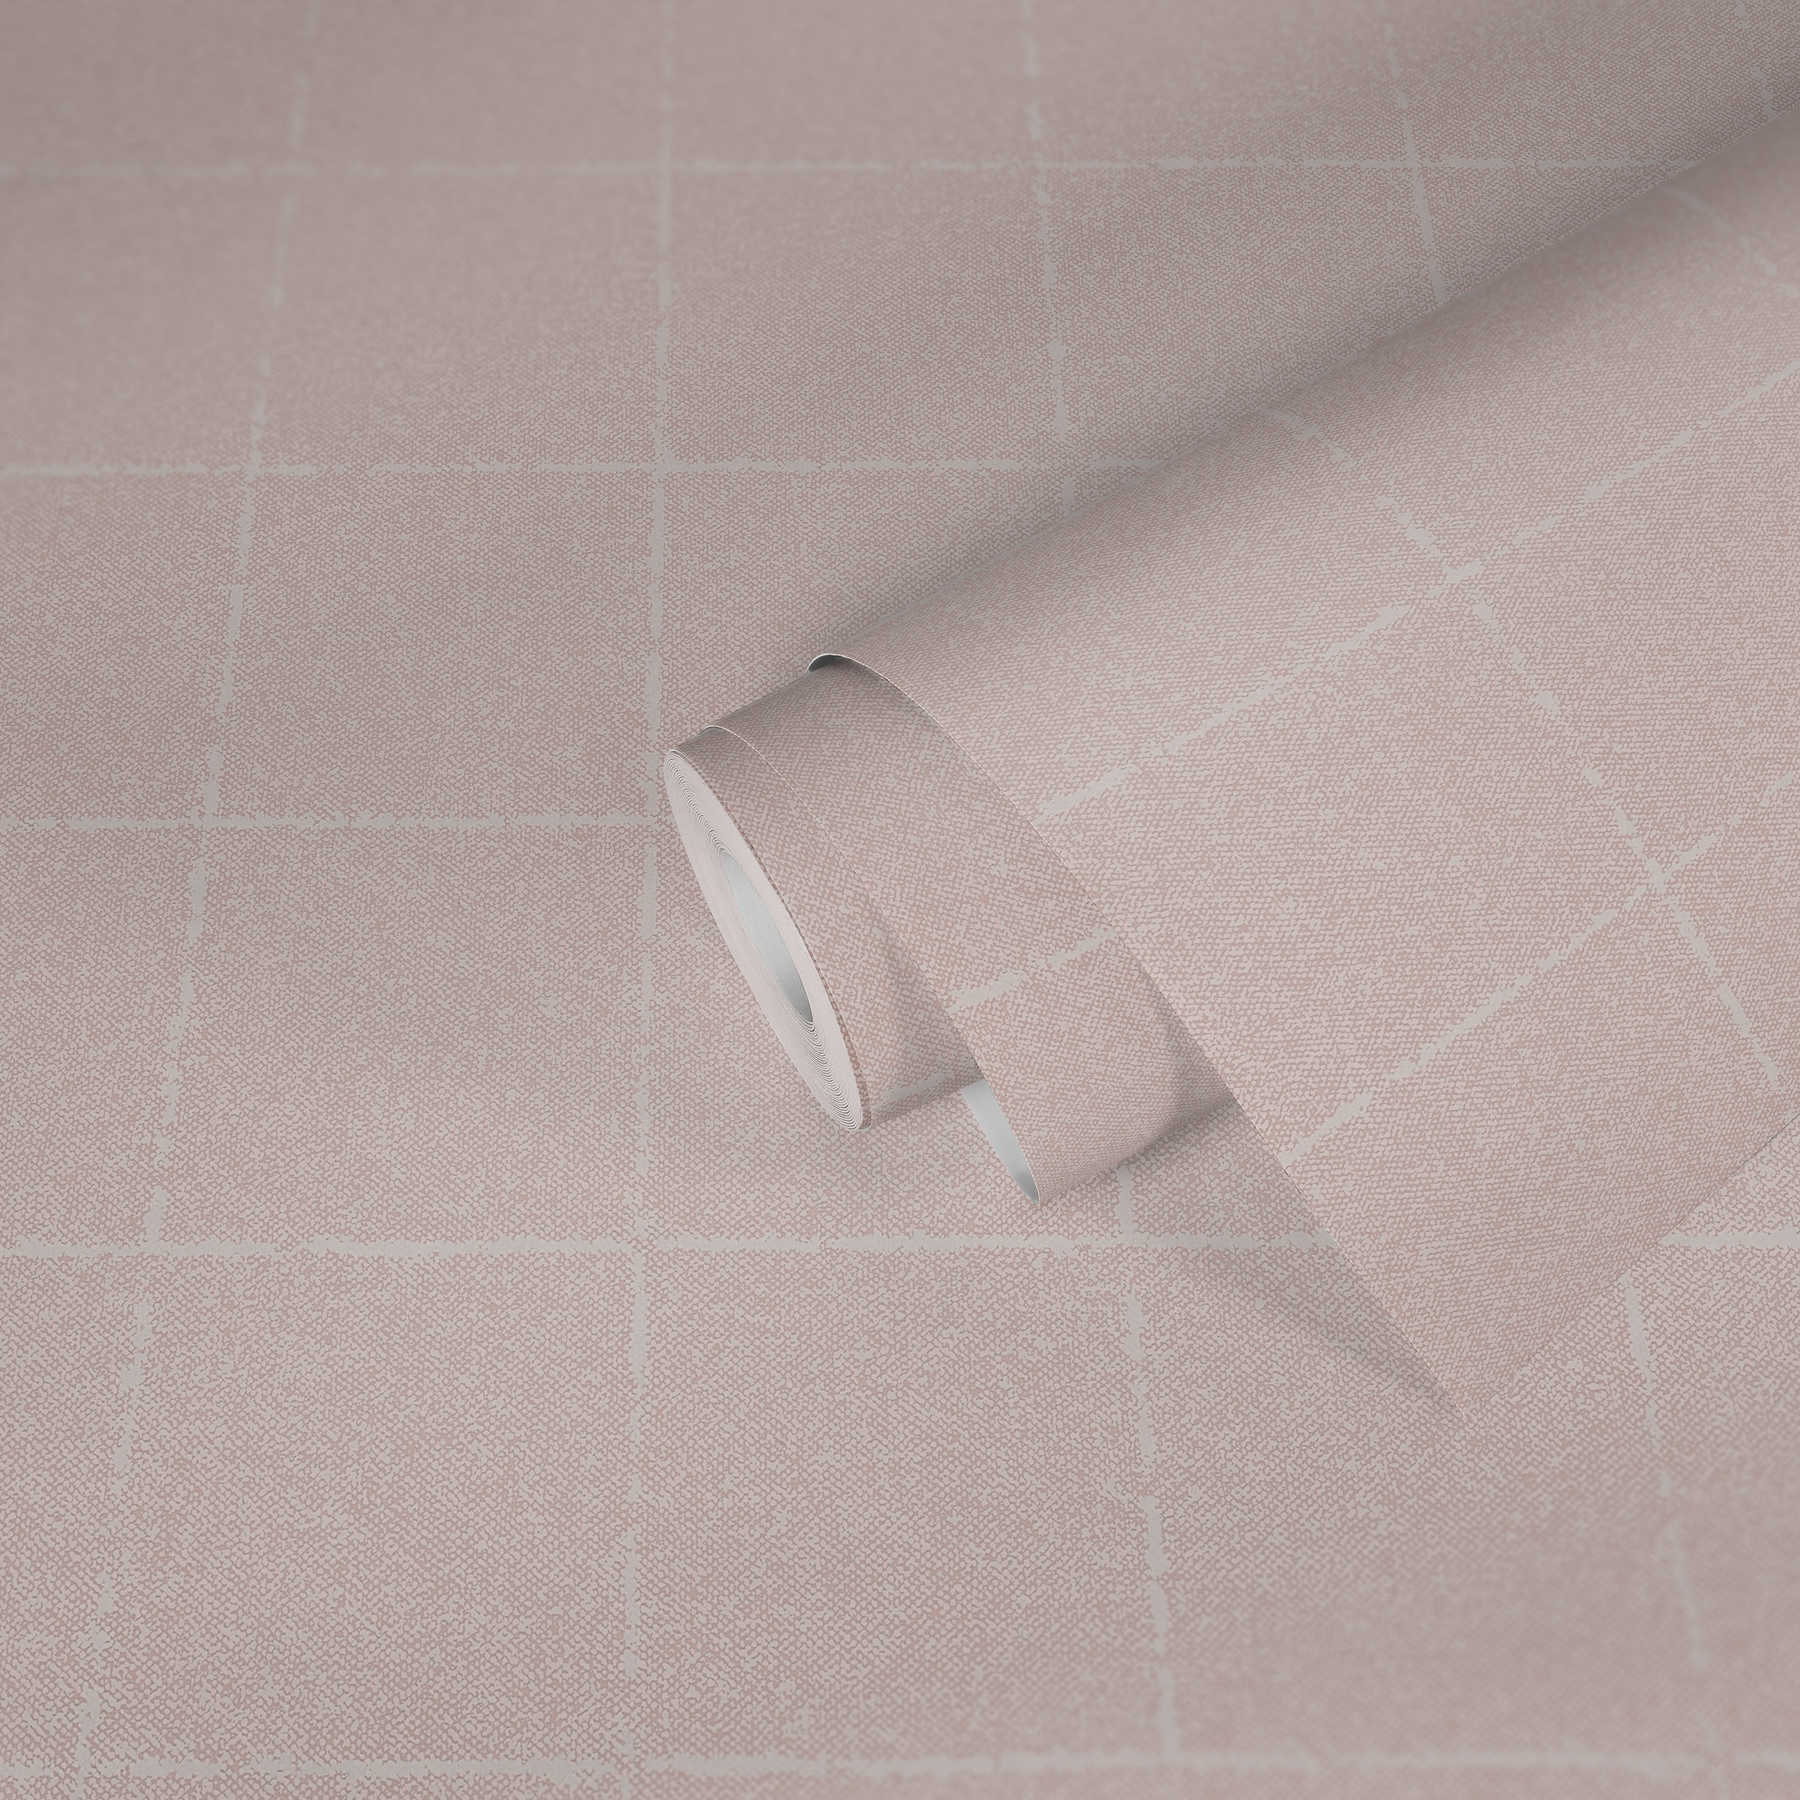             Papier peint à carreaux, aspect textile, texturé - rose, blanc, crème
        